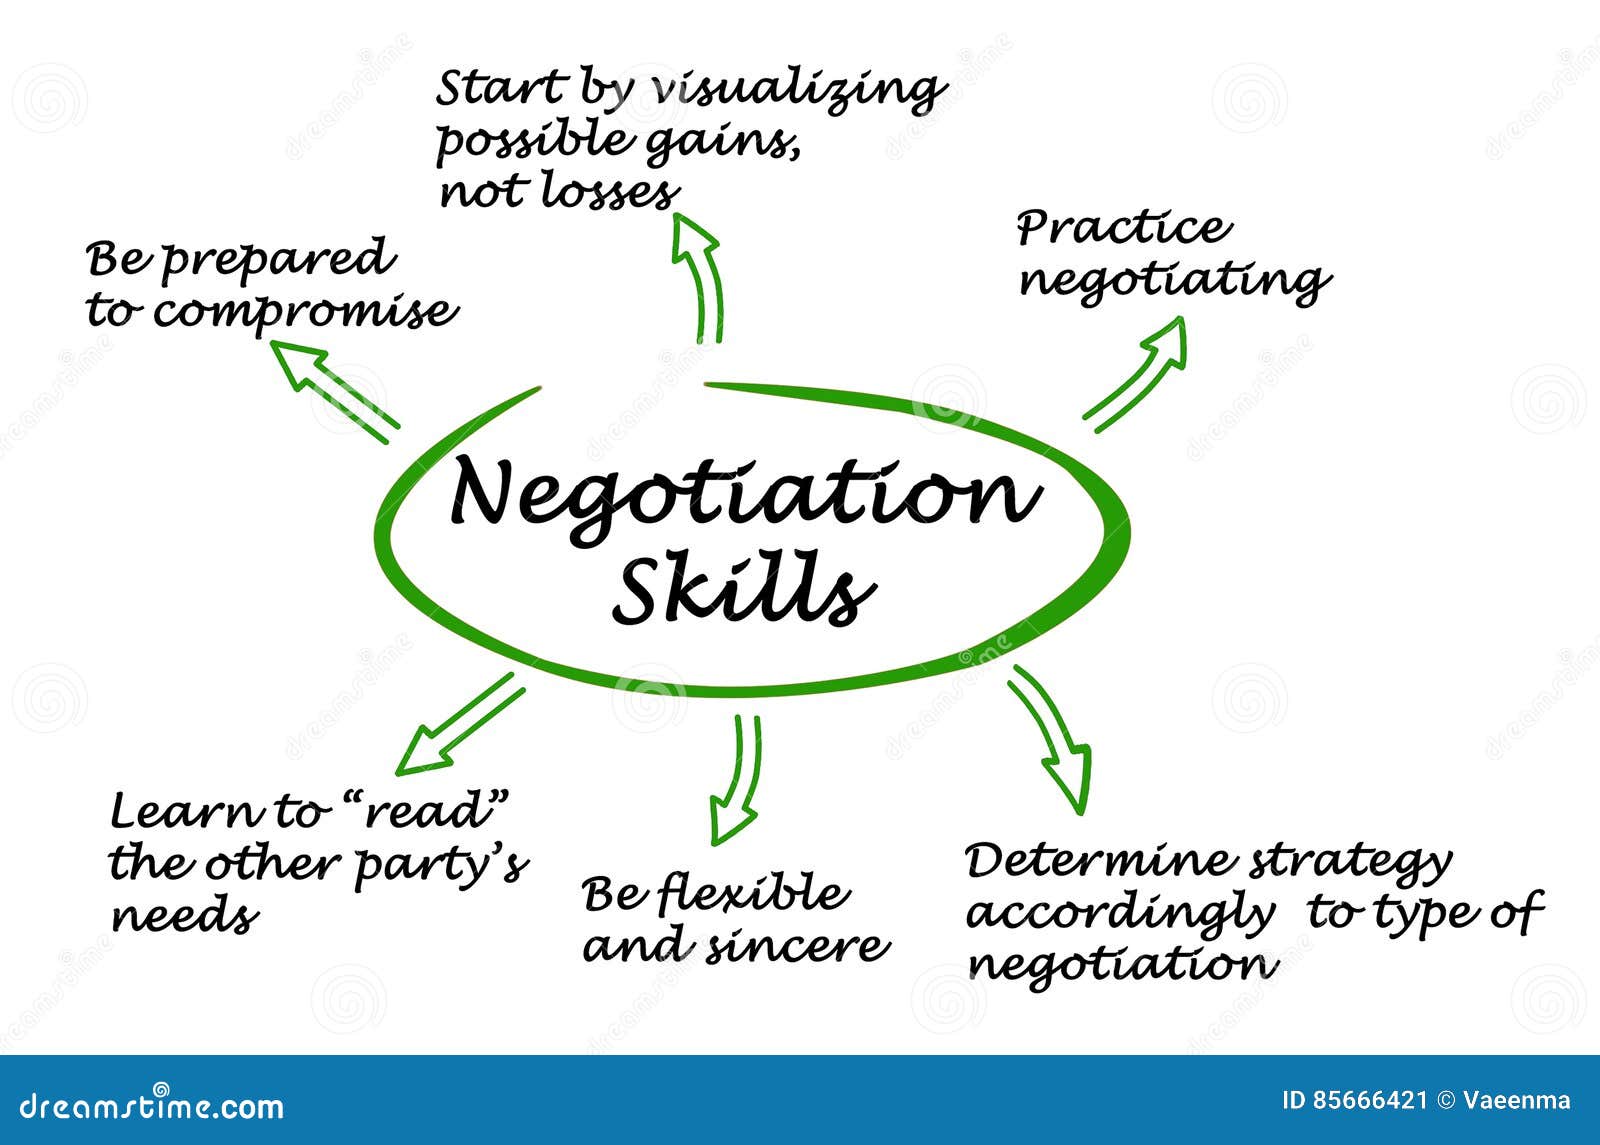 negotiation skills in problem solving